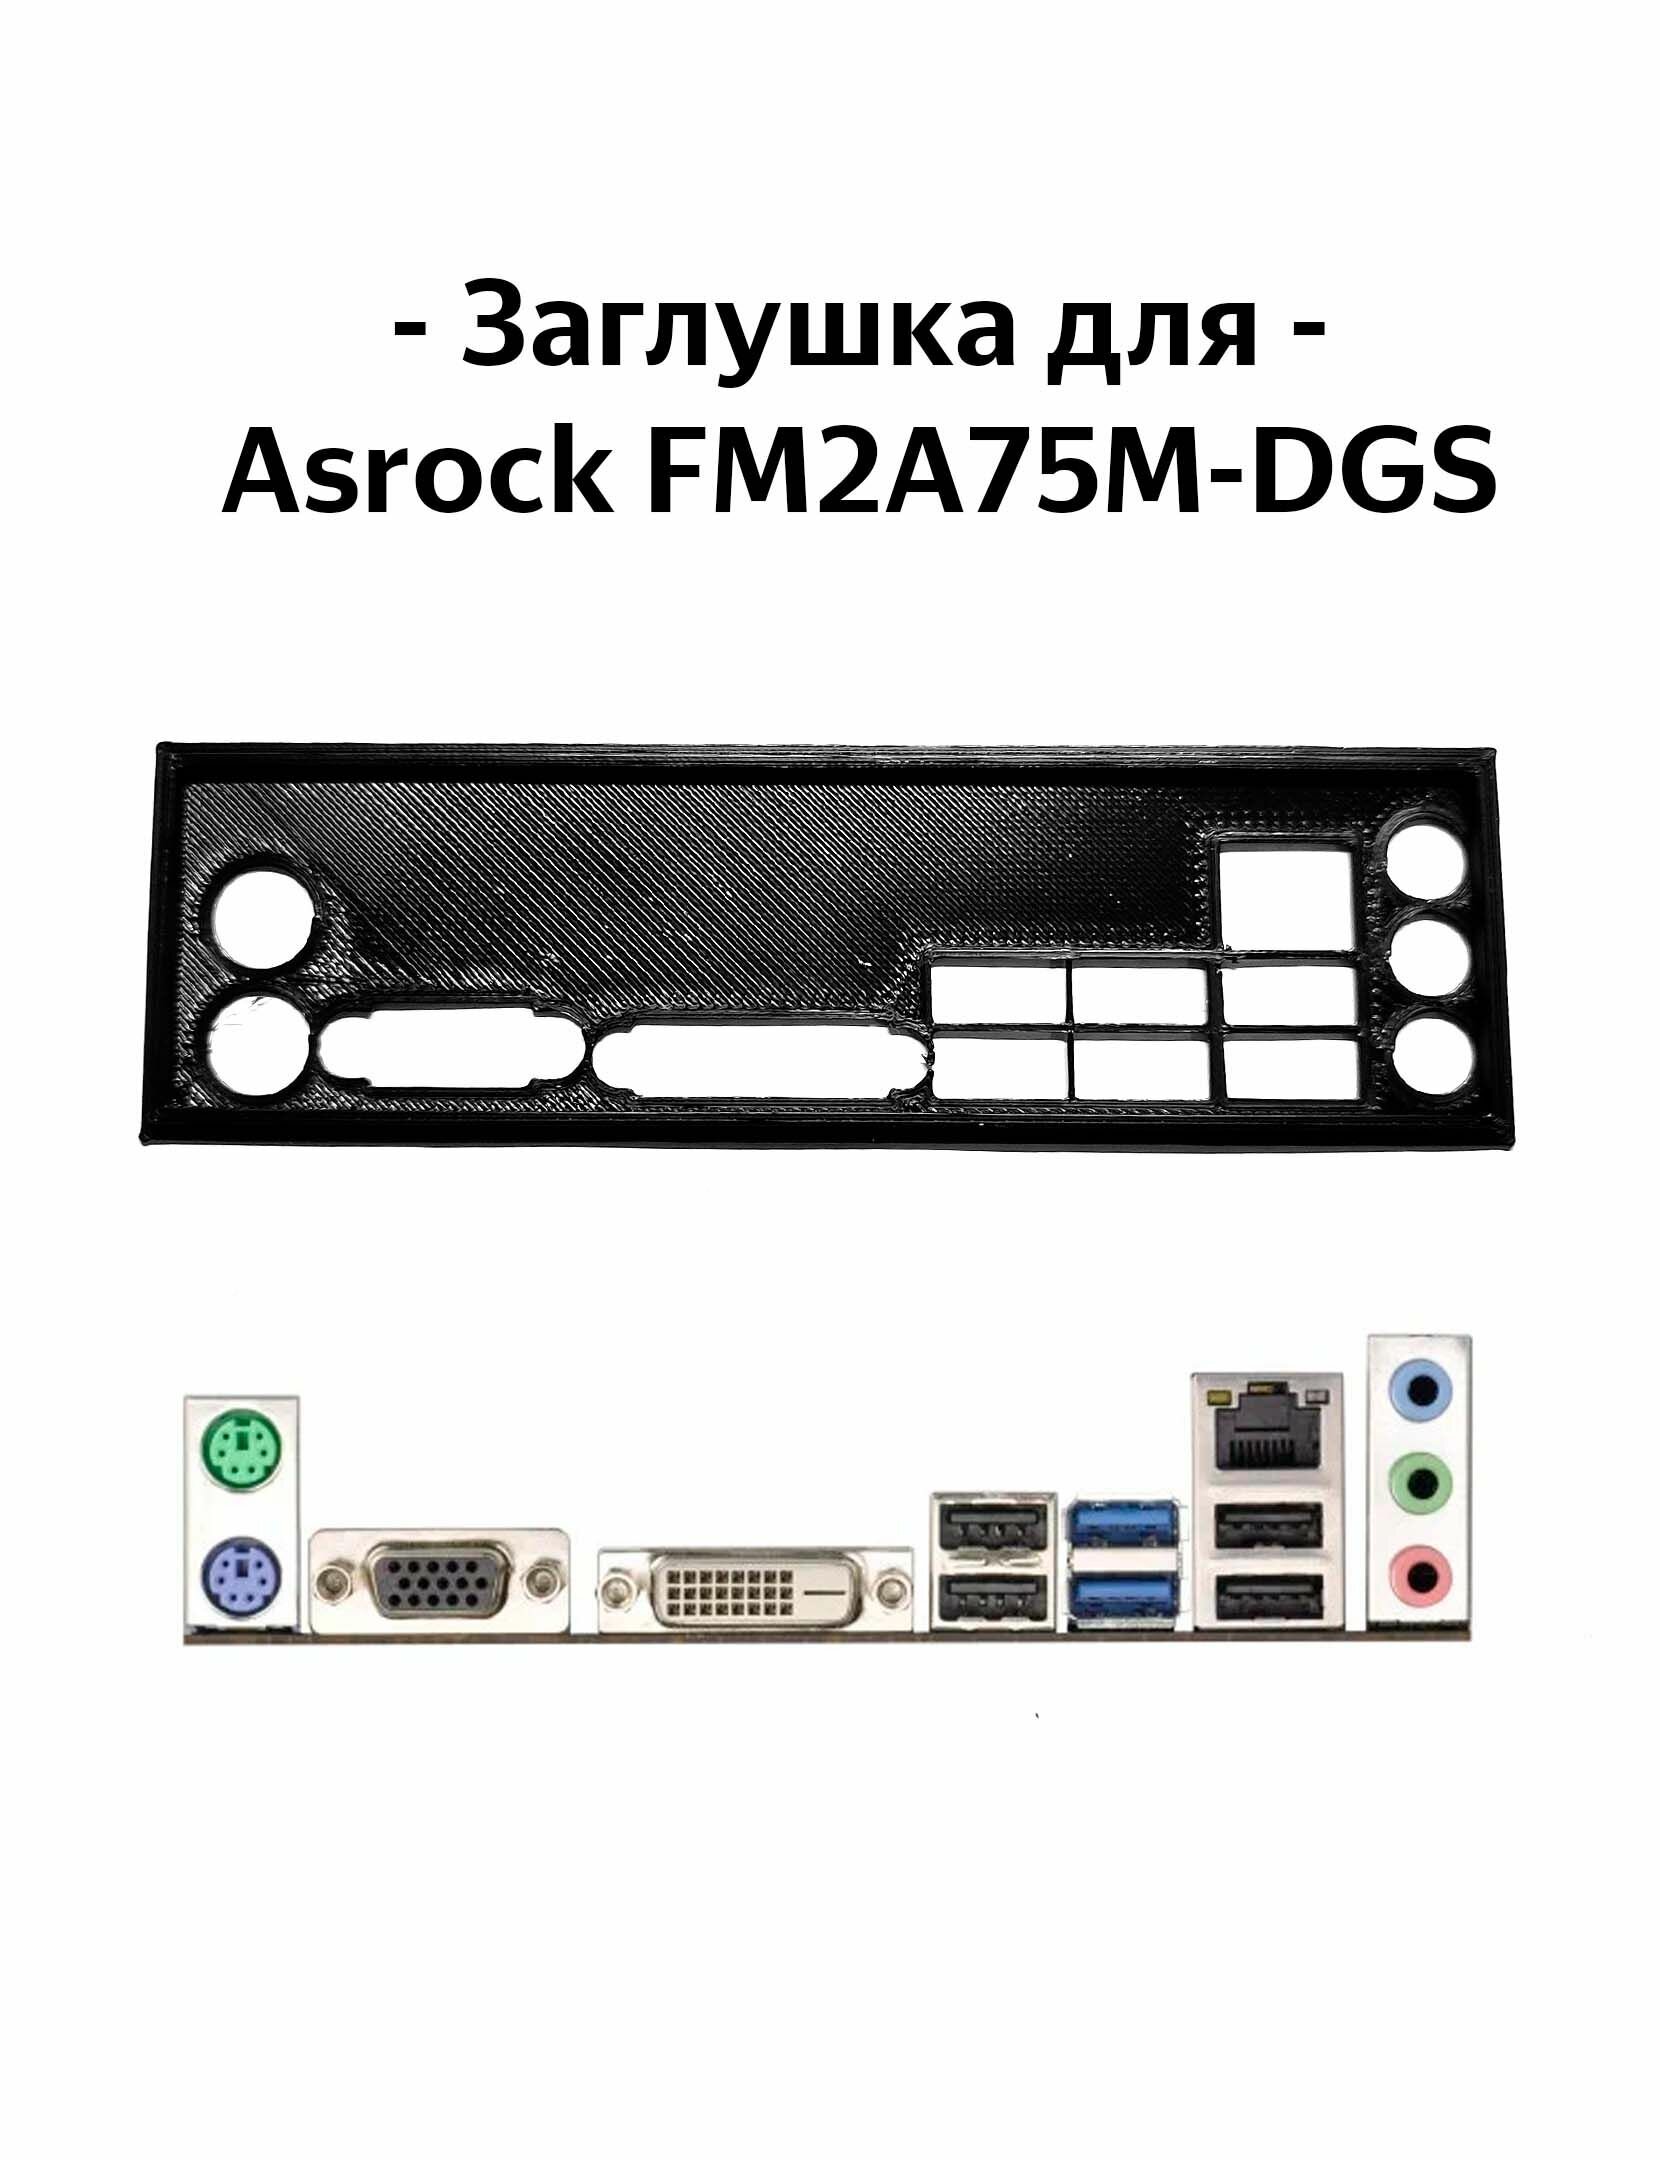 Пылезащитная заглушка, задняя панель для материнской платы Asrock FM2A75M-DGS